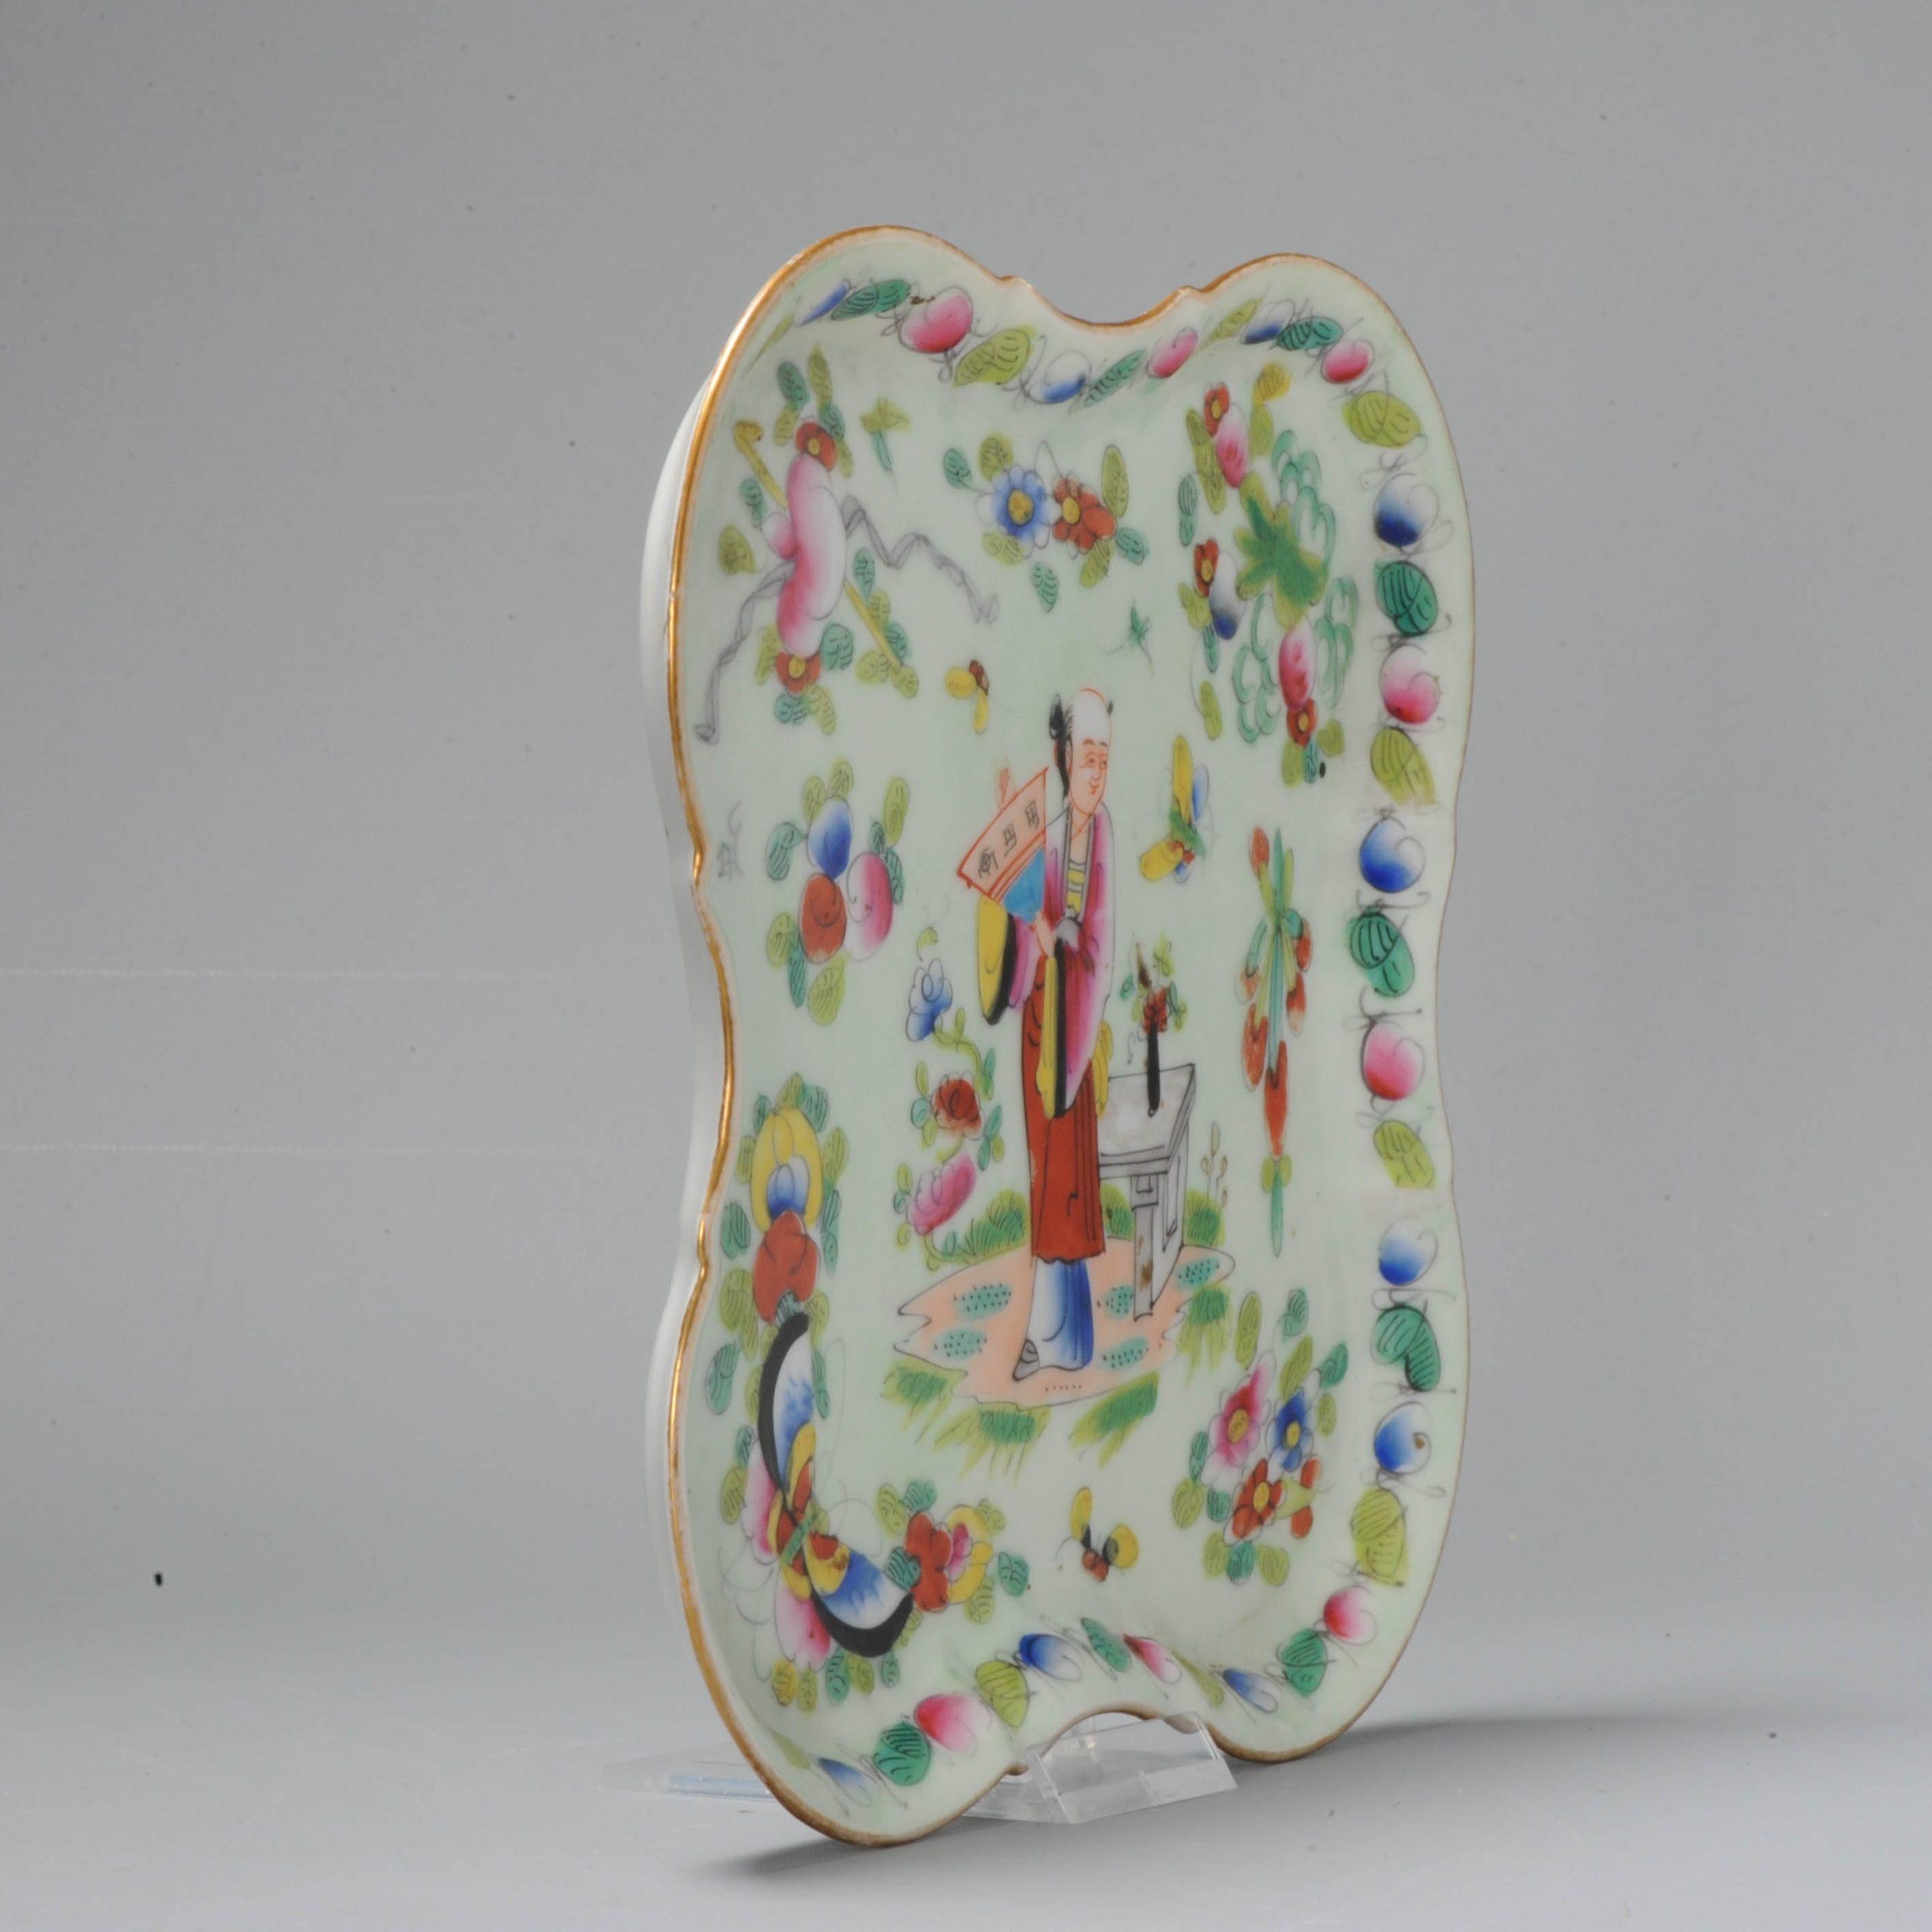 Eine sehr schöne und ungewöhnliche kantonesische Schale in polychromen Farben. Nach chinesischem Porzellan, aber aus Frankreich, Bayeux Fabrik.

Ein wahrhaft fantastisches und ungewöhnliches Stück.

Zusätzliche Informationen:
MATERIAL: Porzellan &